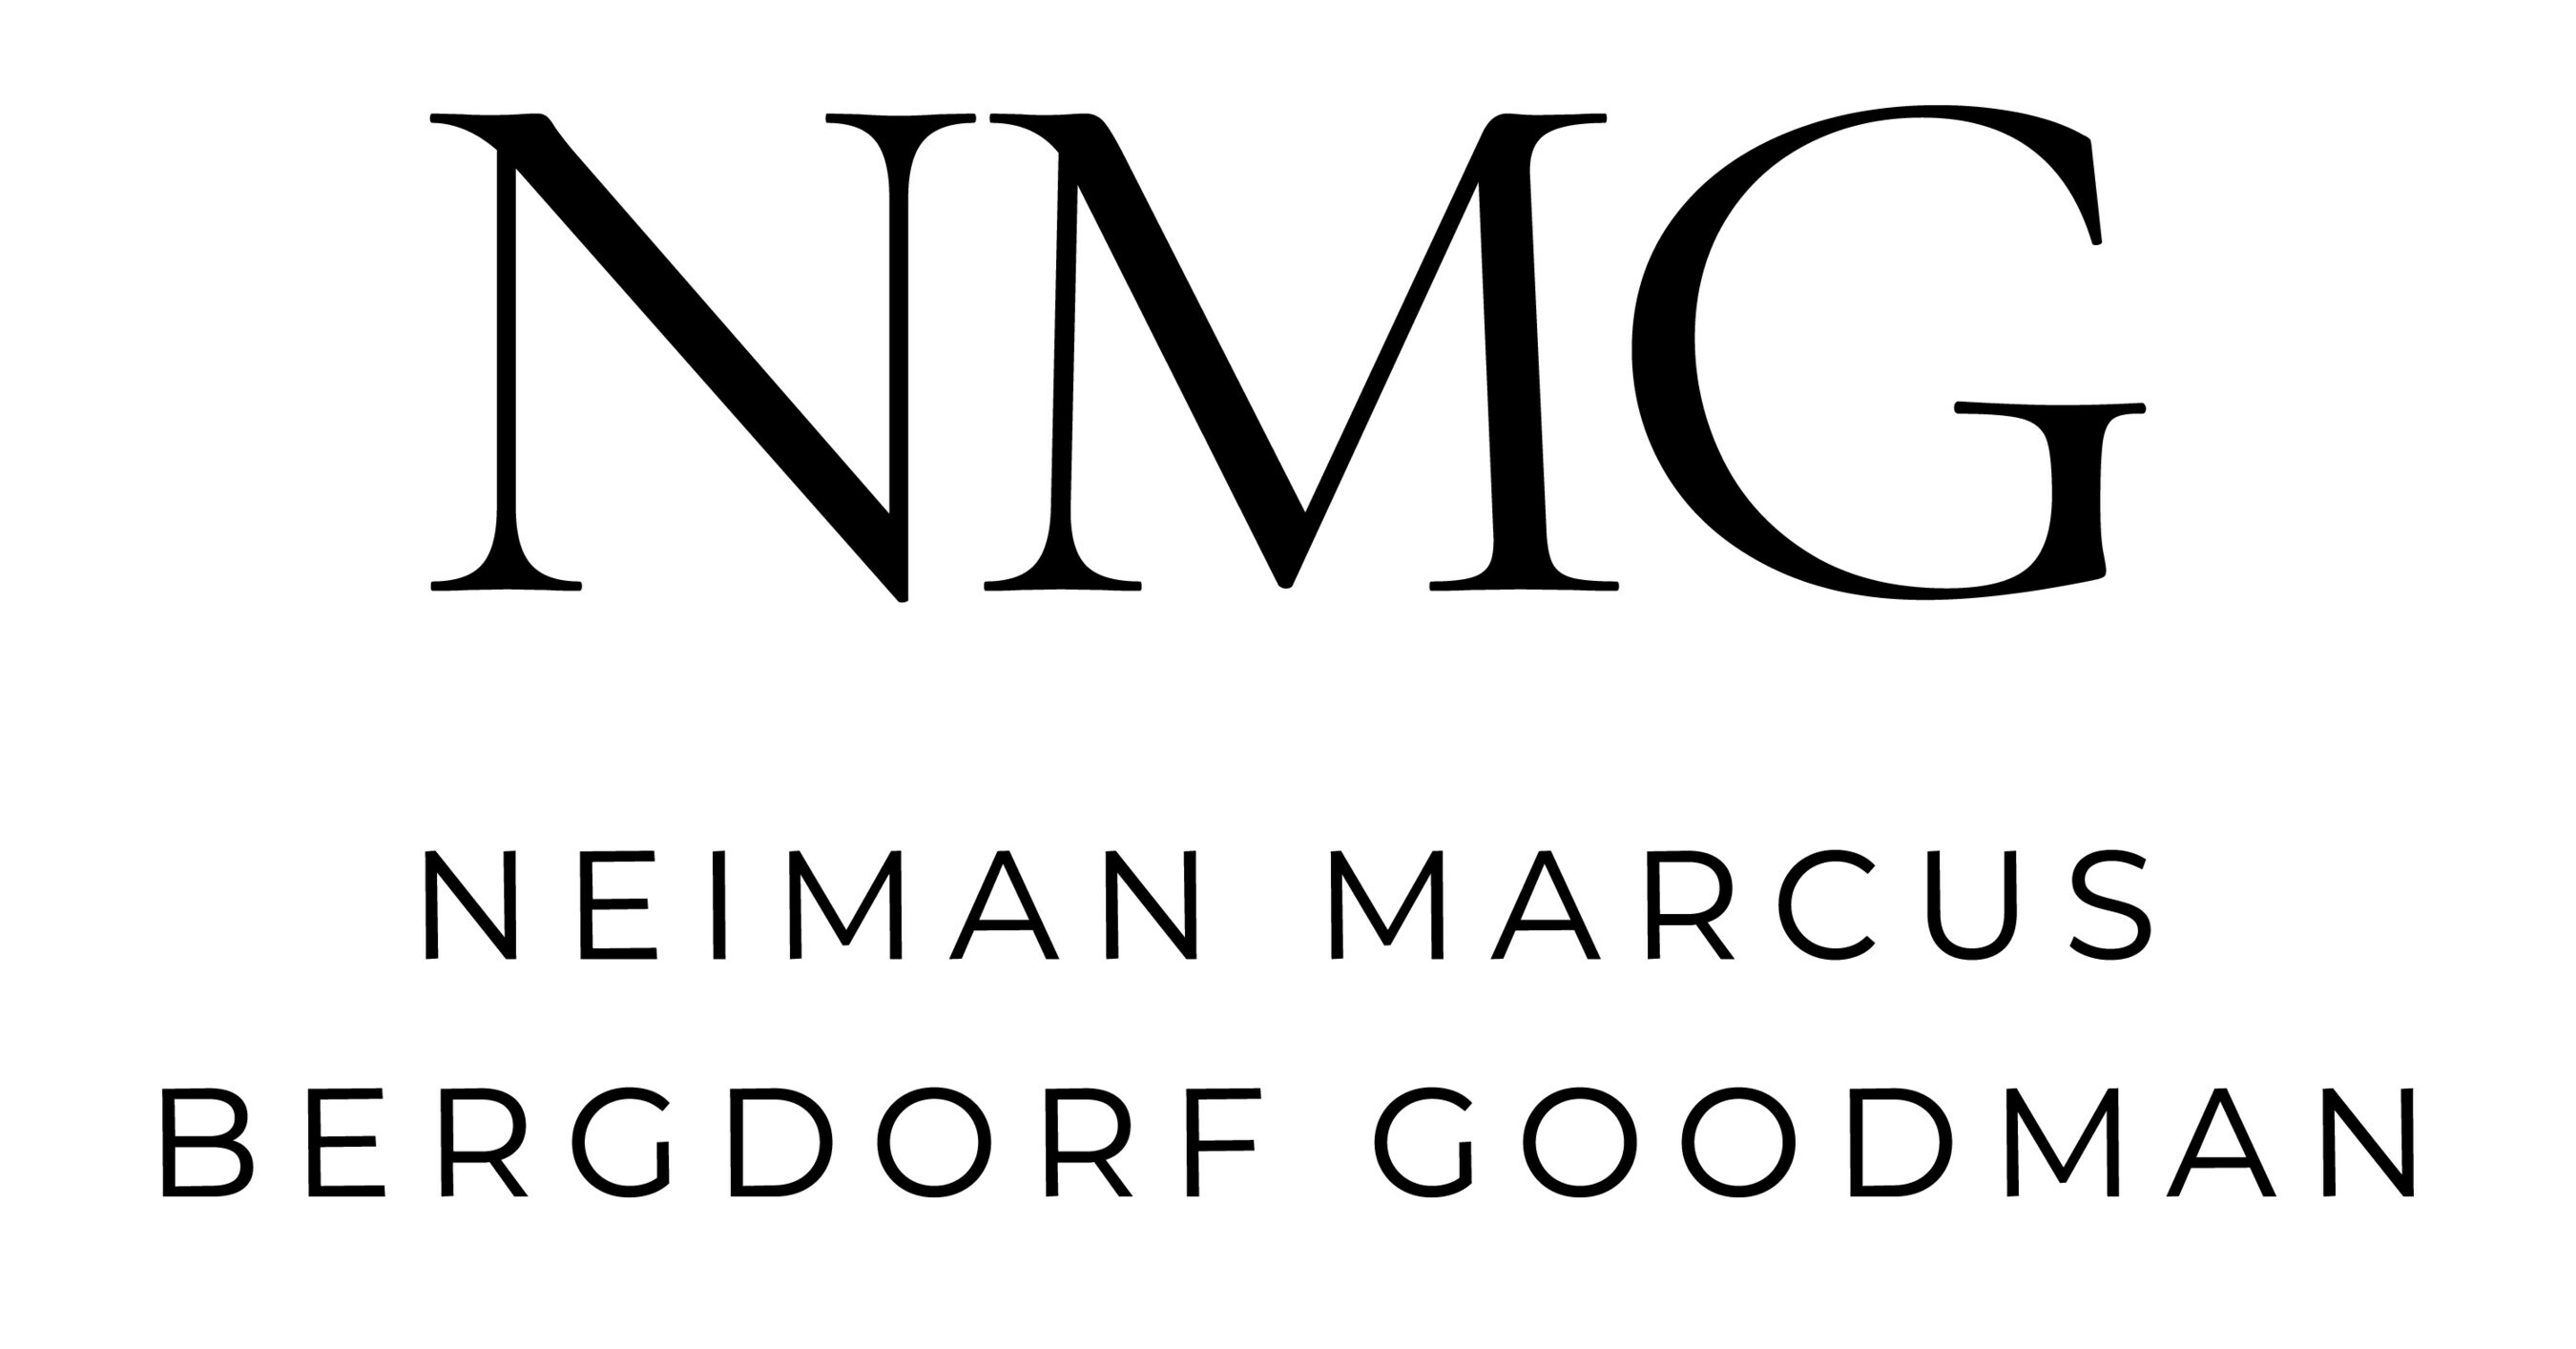 A Tough Agenda Faces Neiman Marcus' New CEO